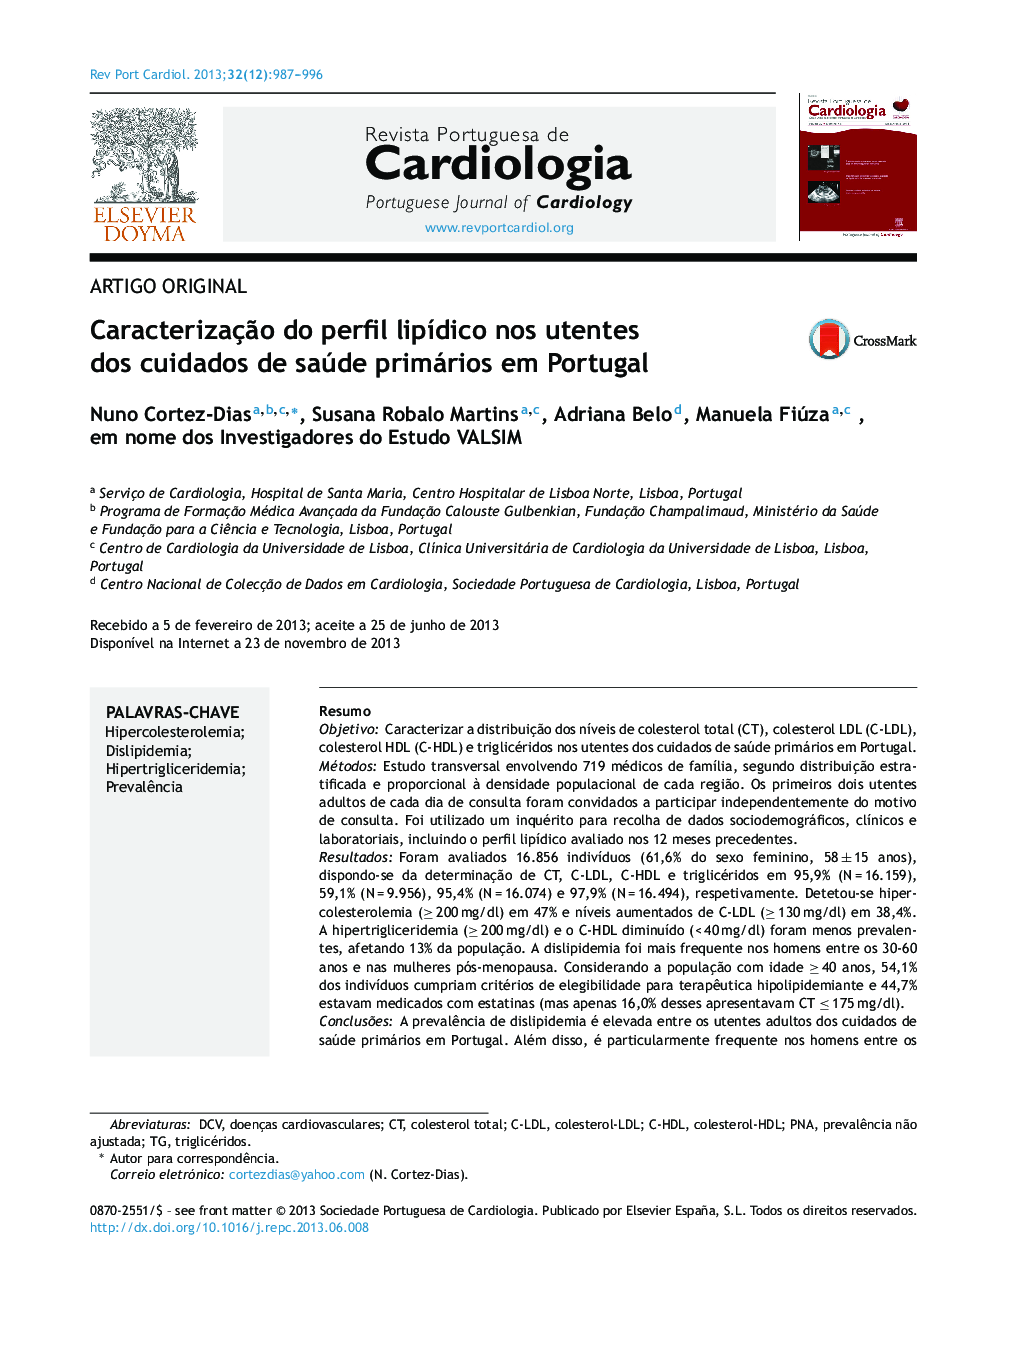 Caracterização do perfil lipídico nos utentes dos cuidados de saúde primários em Portugal